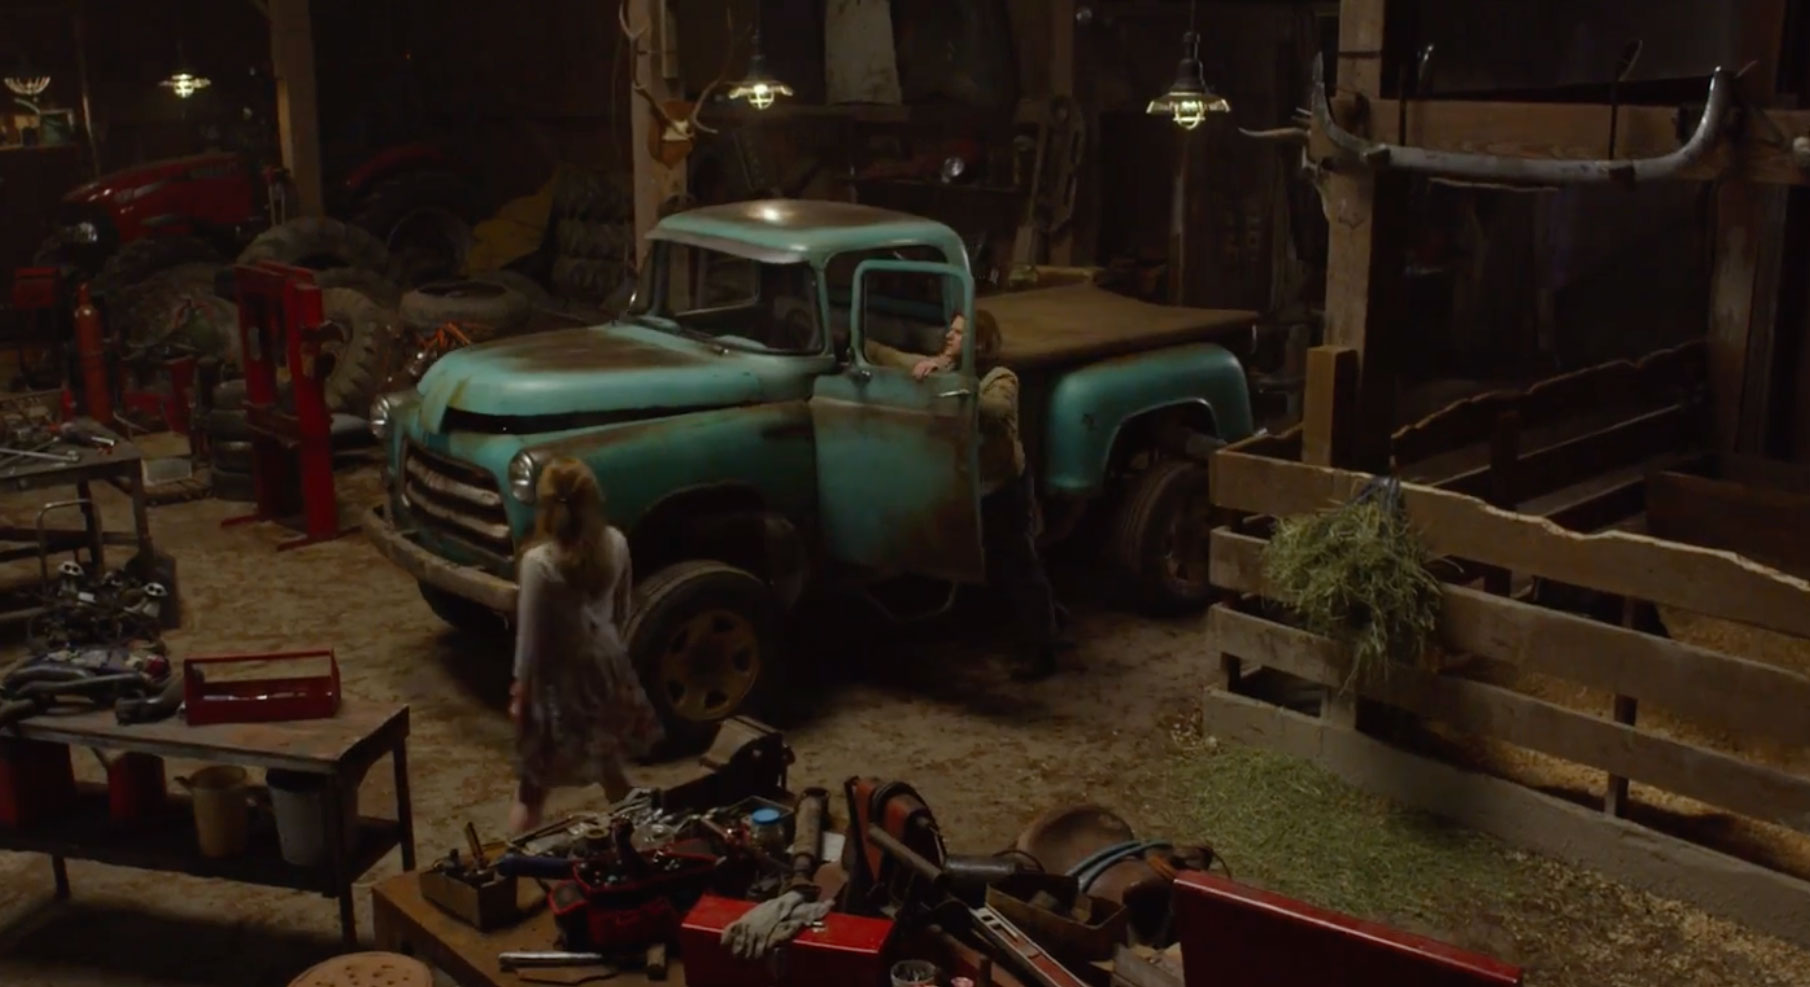 Monster Trucks Movie Still - #391282